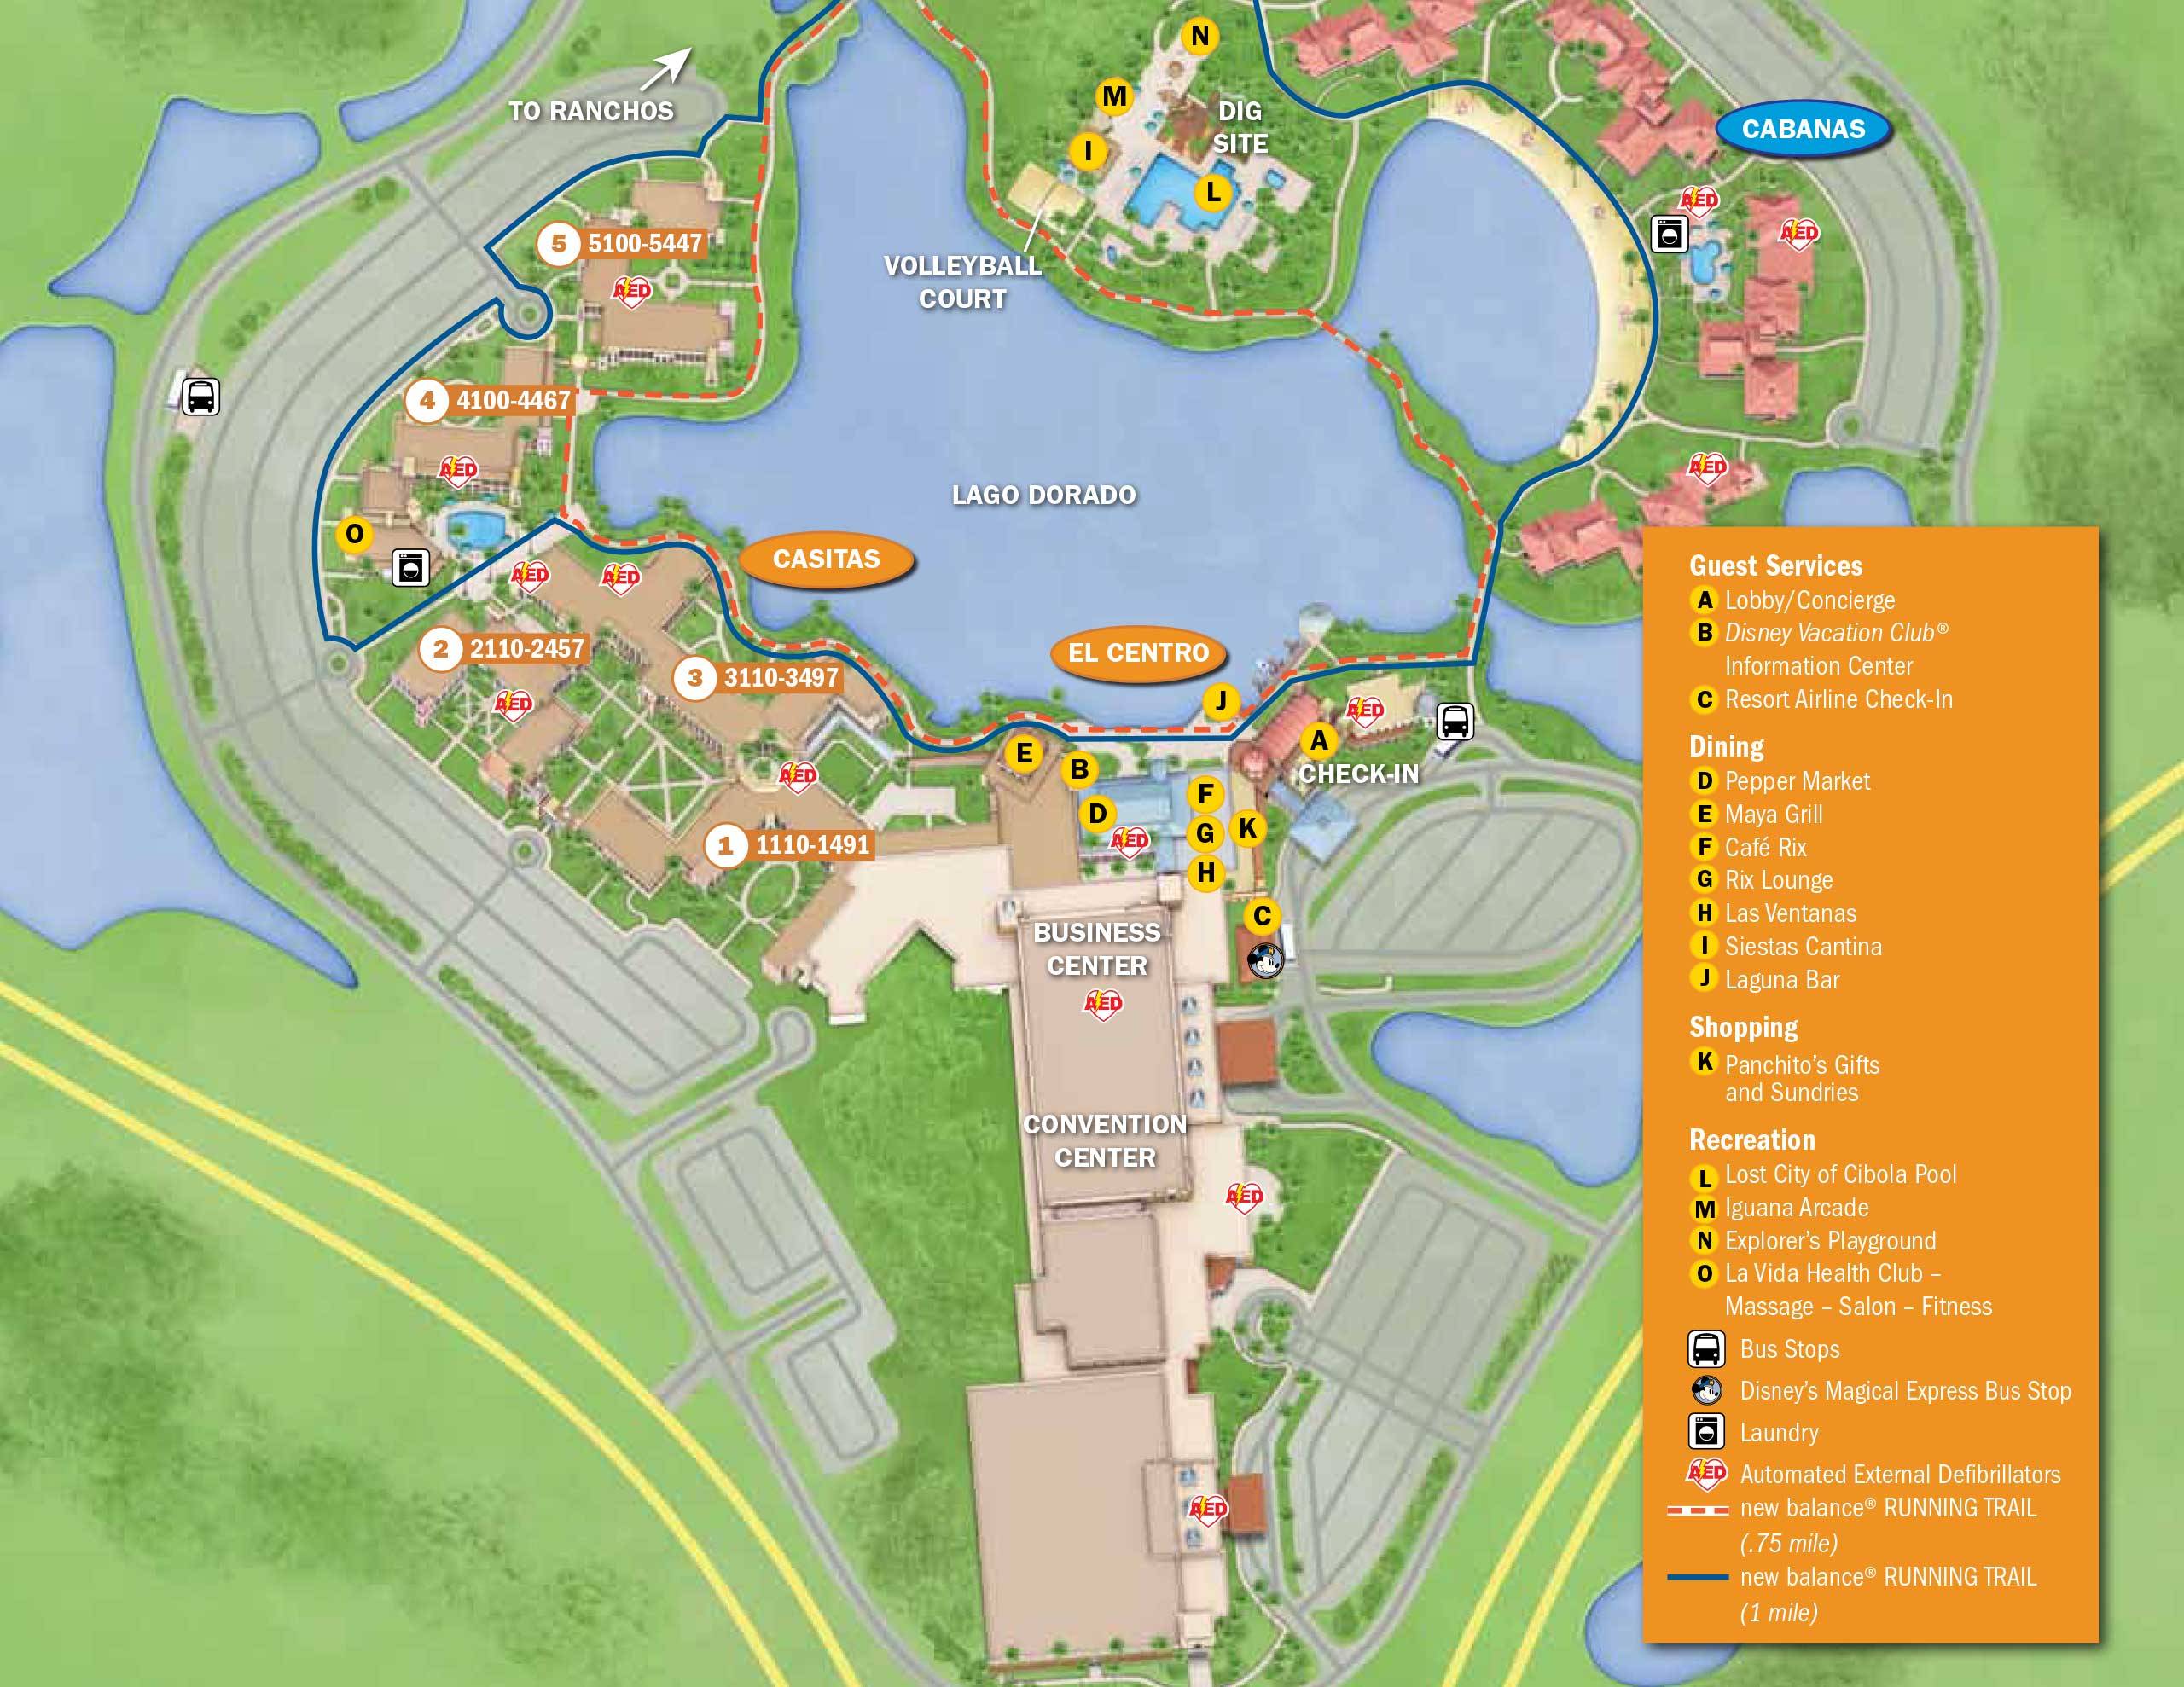 Disney's Coronado Springs Resort map - Cabanas, Casitas and El Centro